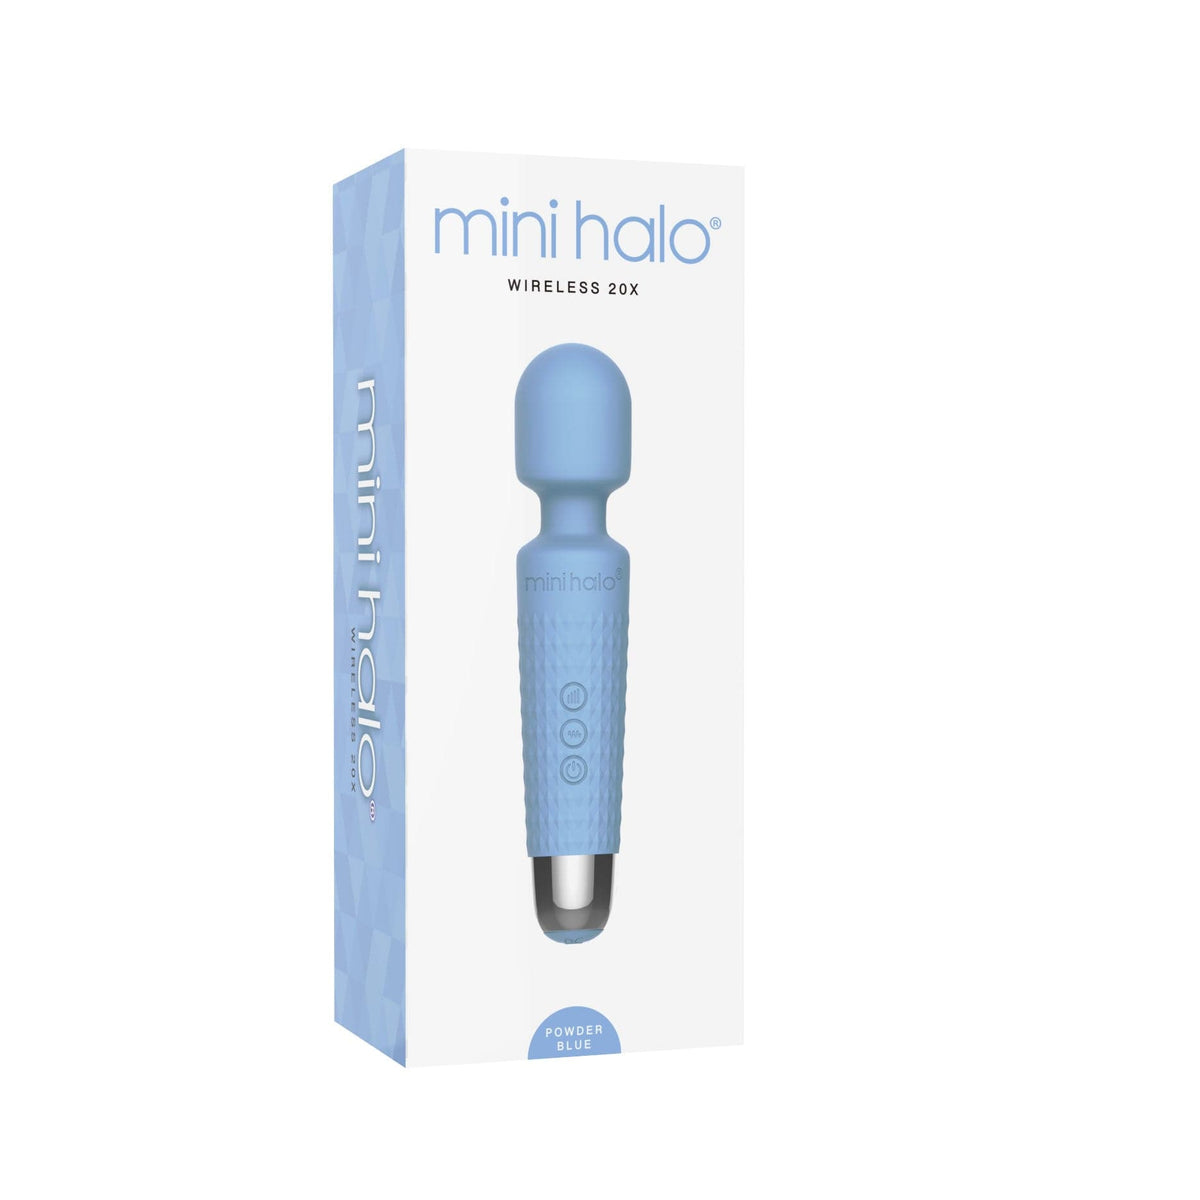 mini halo wireless 20x powder blue